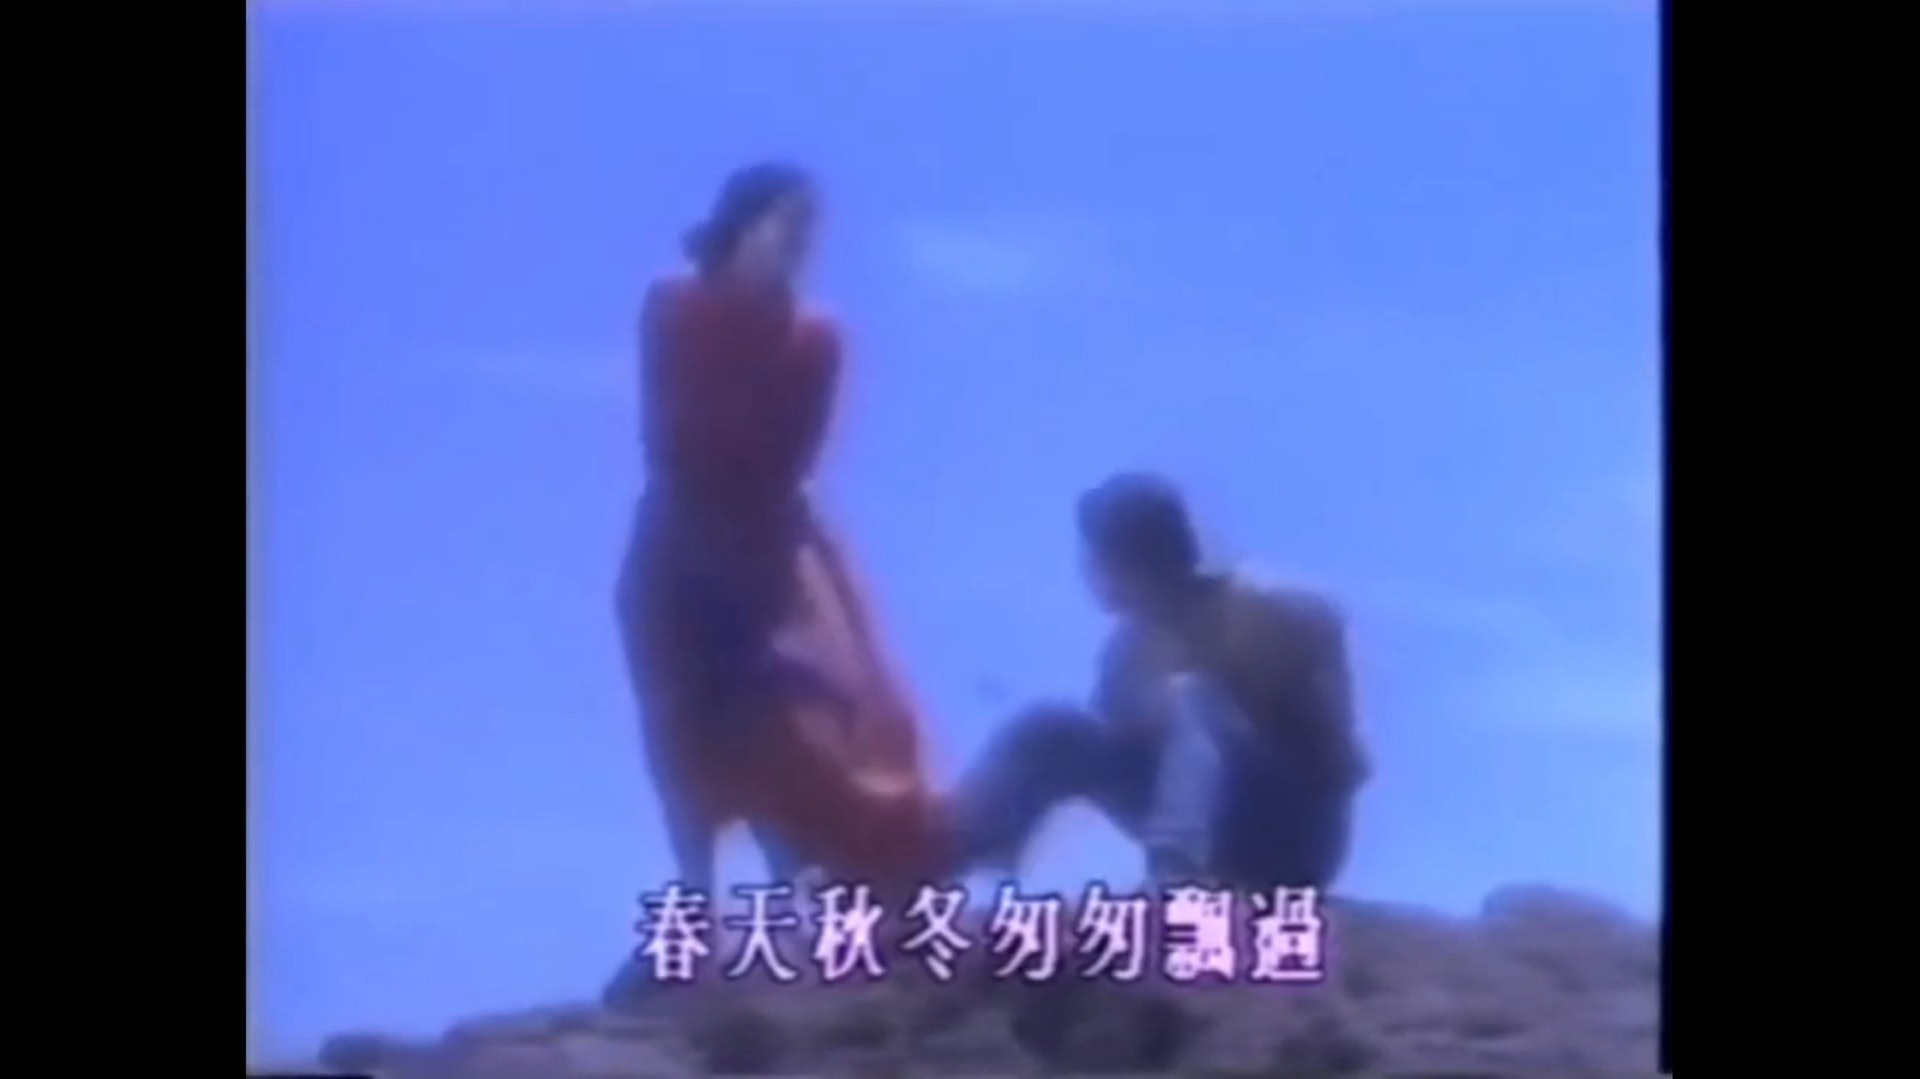 5. 在1989年，當時梅艷芳與模特兒劉米高在拍攝手錶廣告時認識，及後兩人展開戀情，但短暫交往後分手。兩人在分手後，亦曾經合作拍攝《傷心教堂》及《夏日戀人》MV。（《夏日的戀人》MV 擷圖）